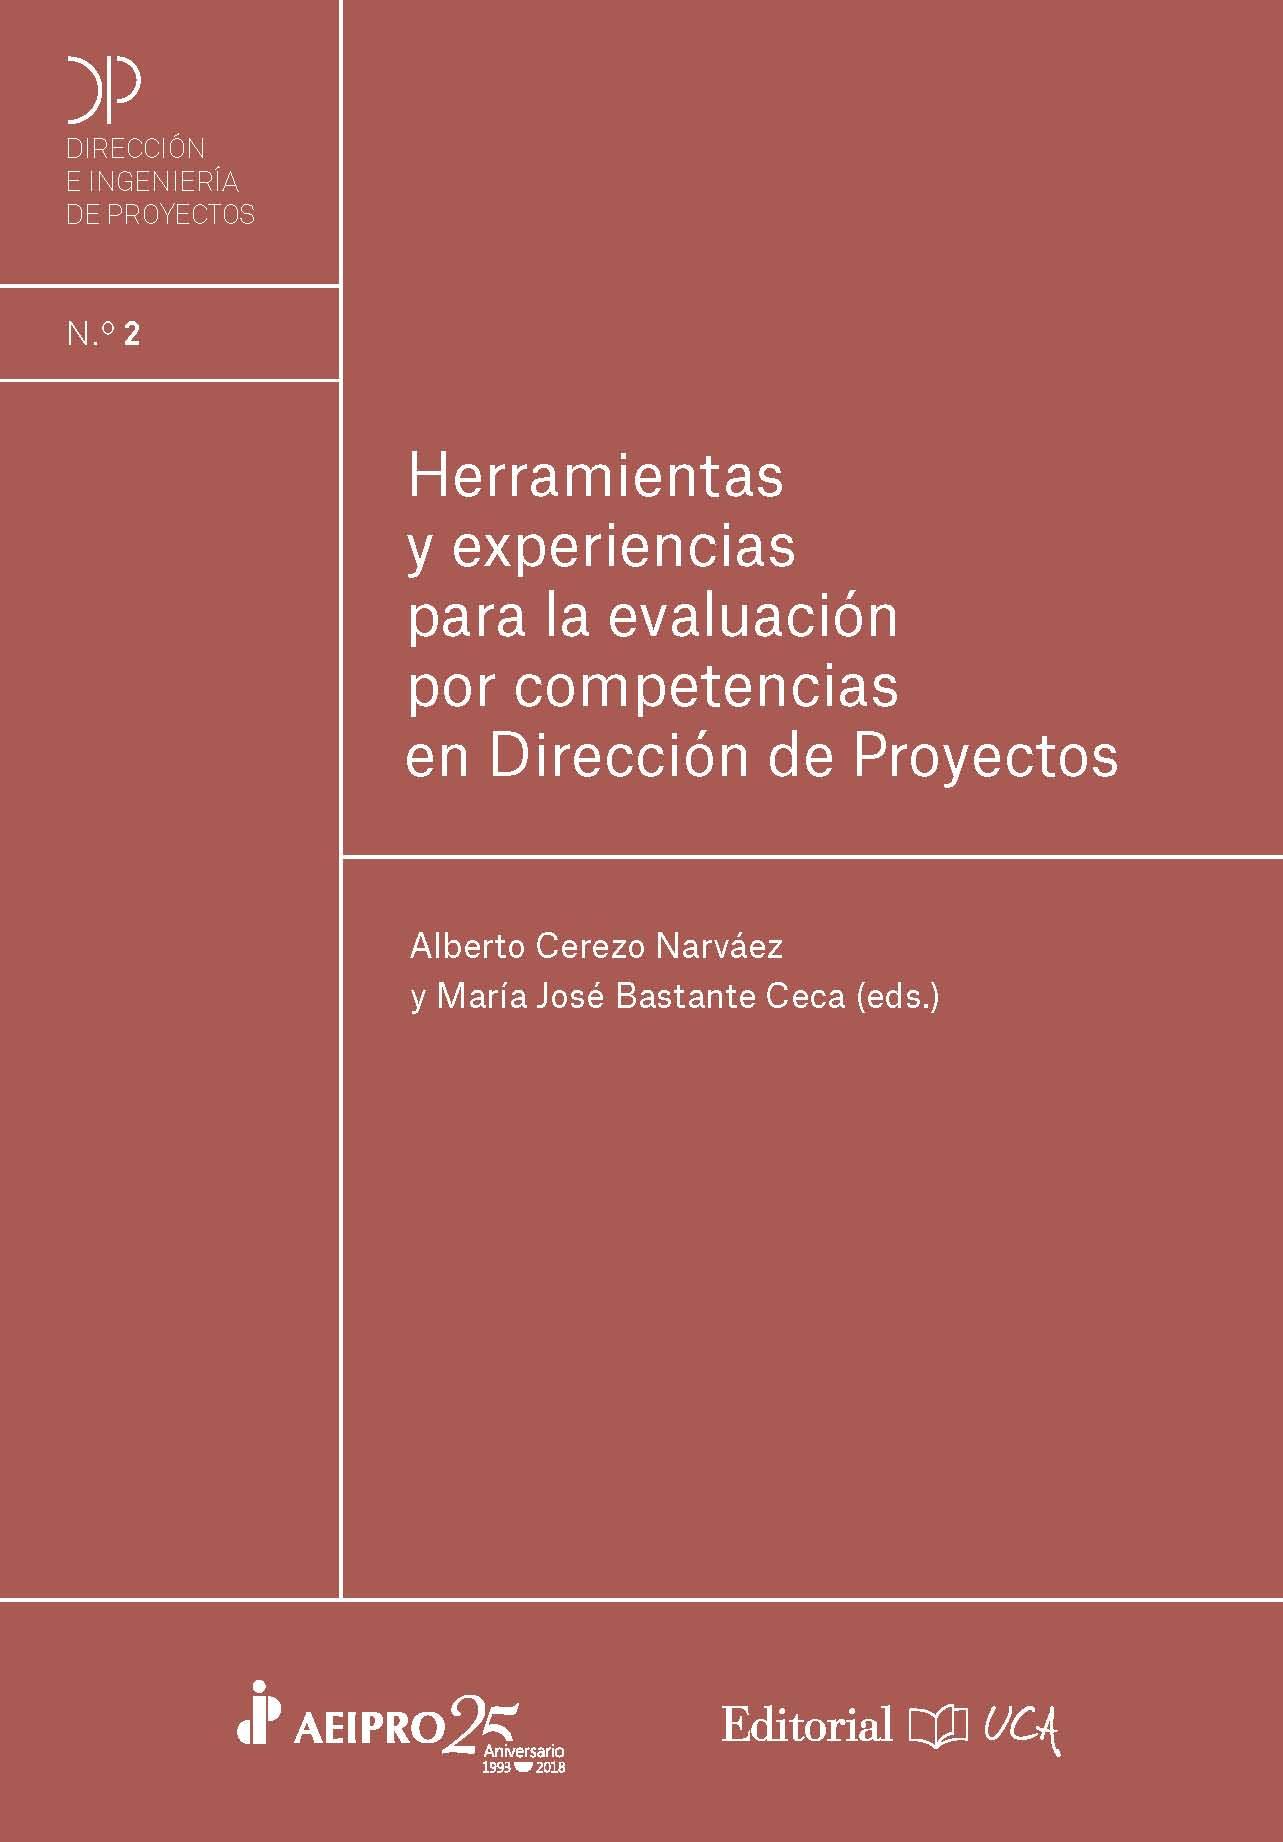 Imagen de portada del libro Herramientas y experiencias para la evaluación por competencias en Dirección de Proyectos